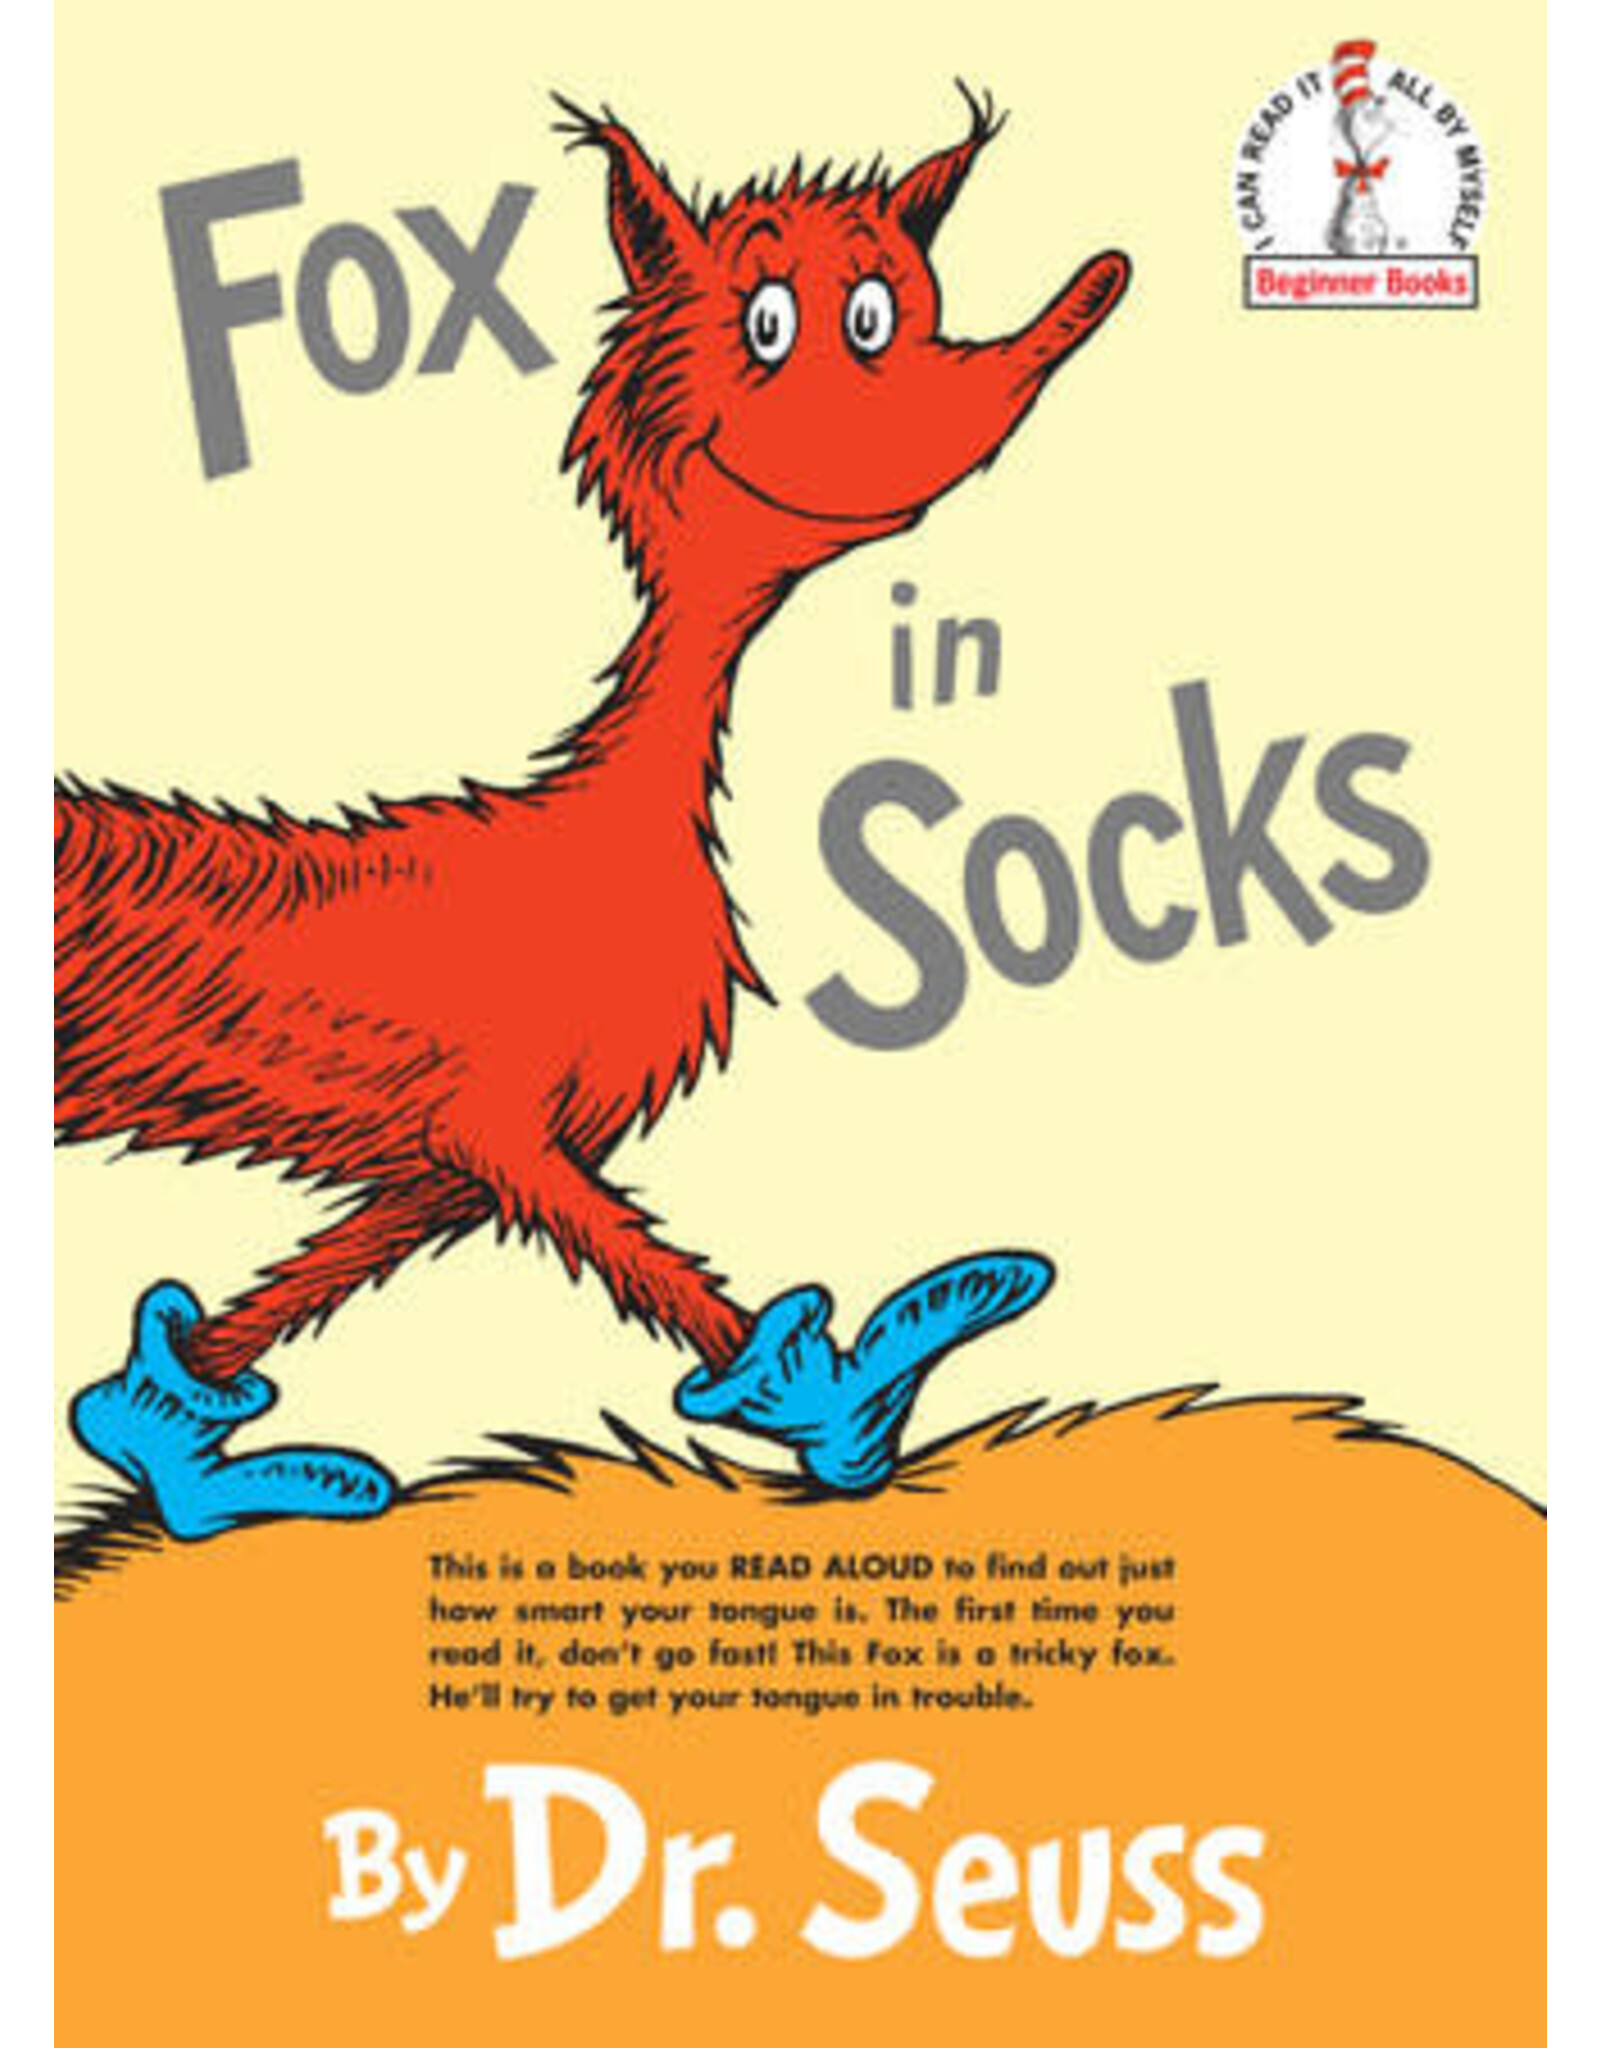 Dr. Seuss Fox in Socks by Dr. Seuss